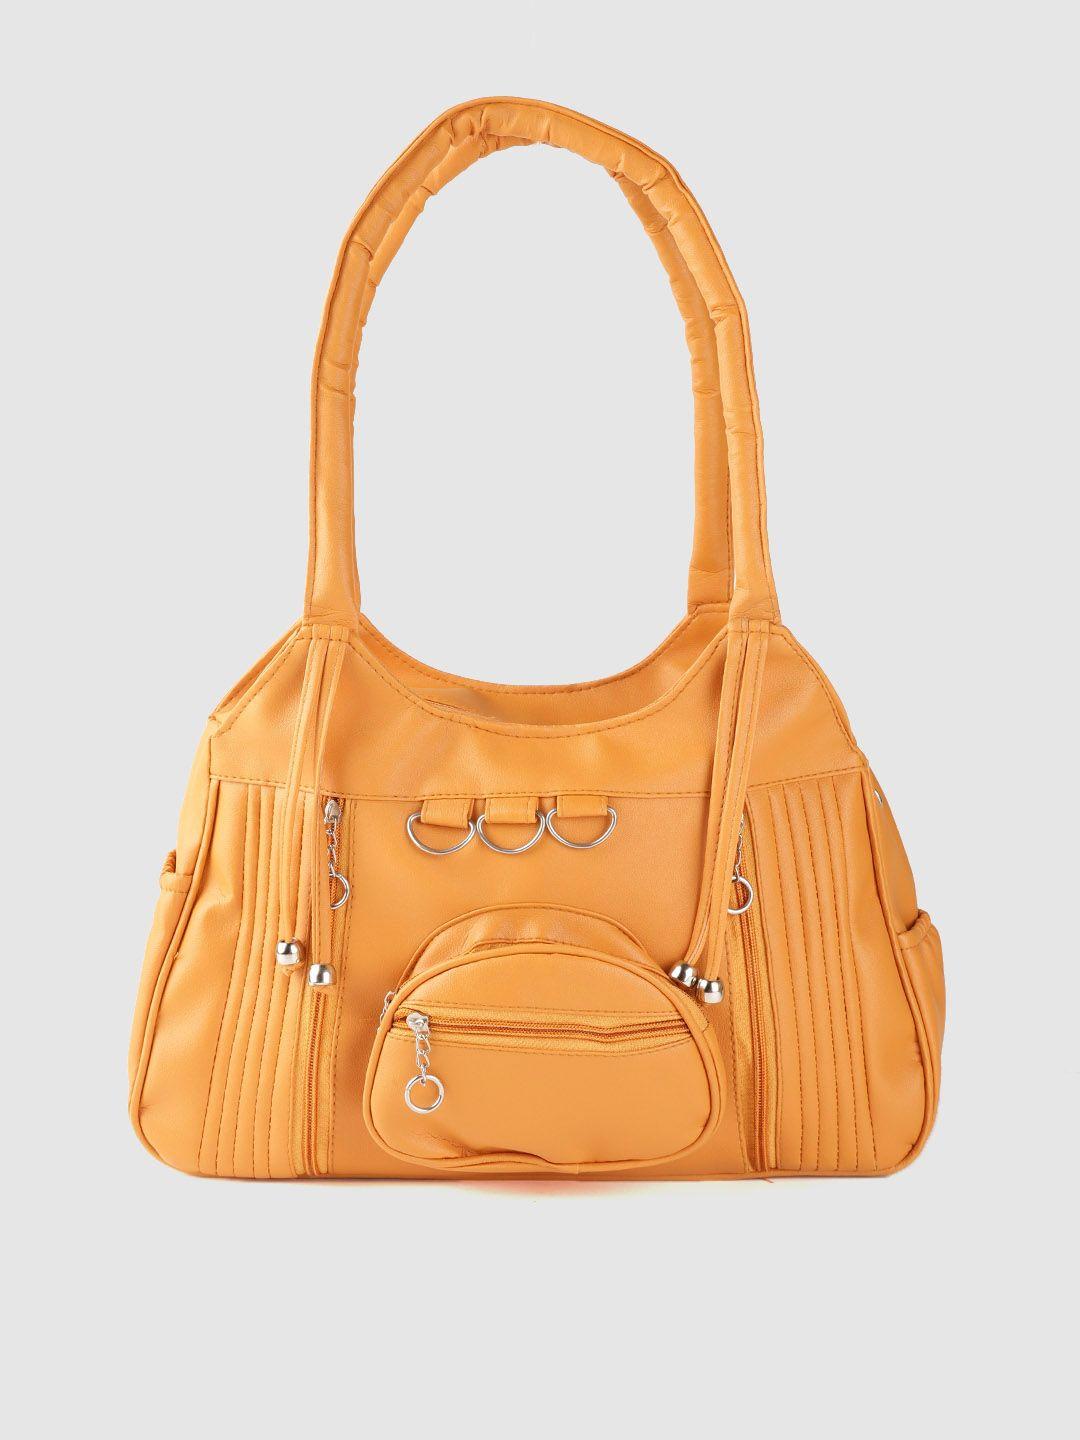 leather retail coral orange solid shoulder bag